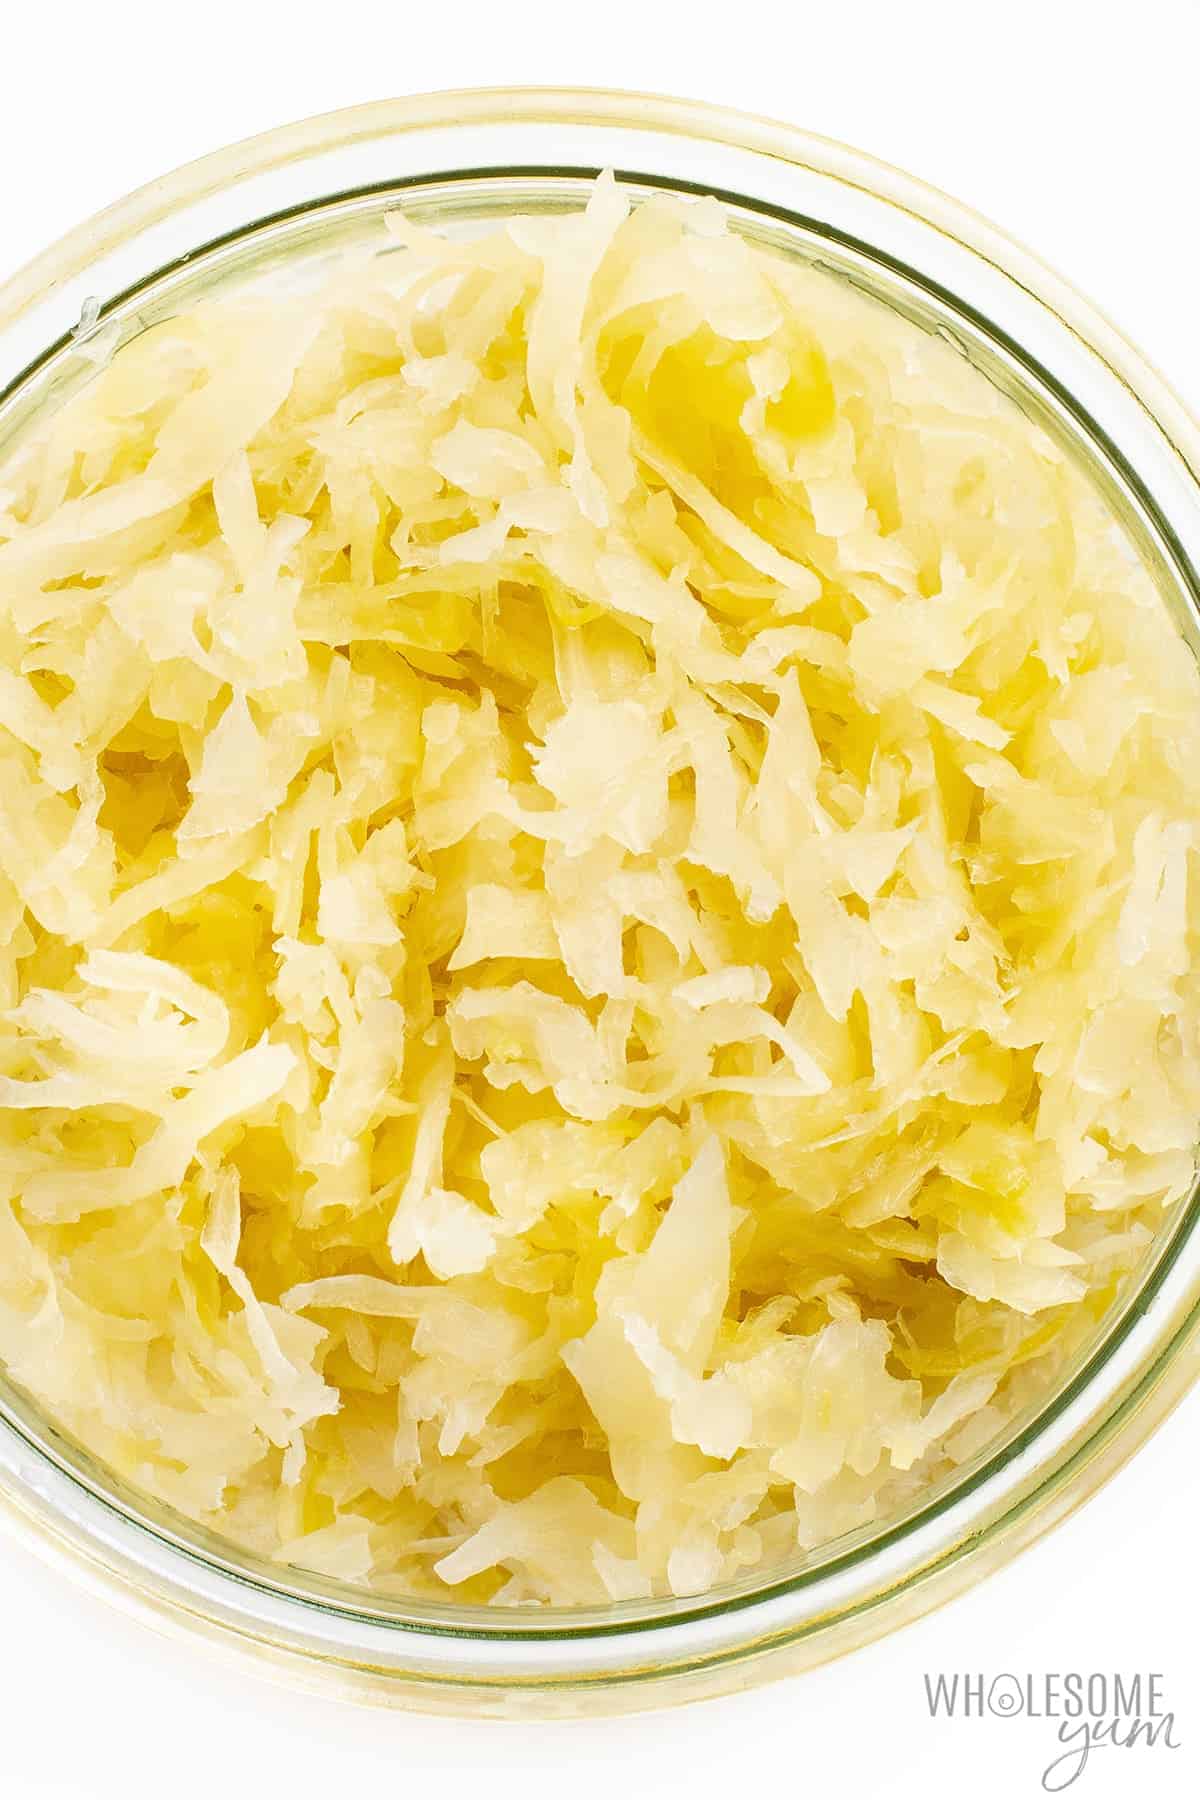 Is sauerkraut keto? This sauerkraut in a jar is naturally keto friendly.